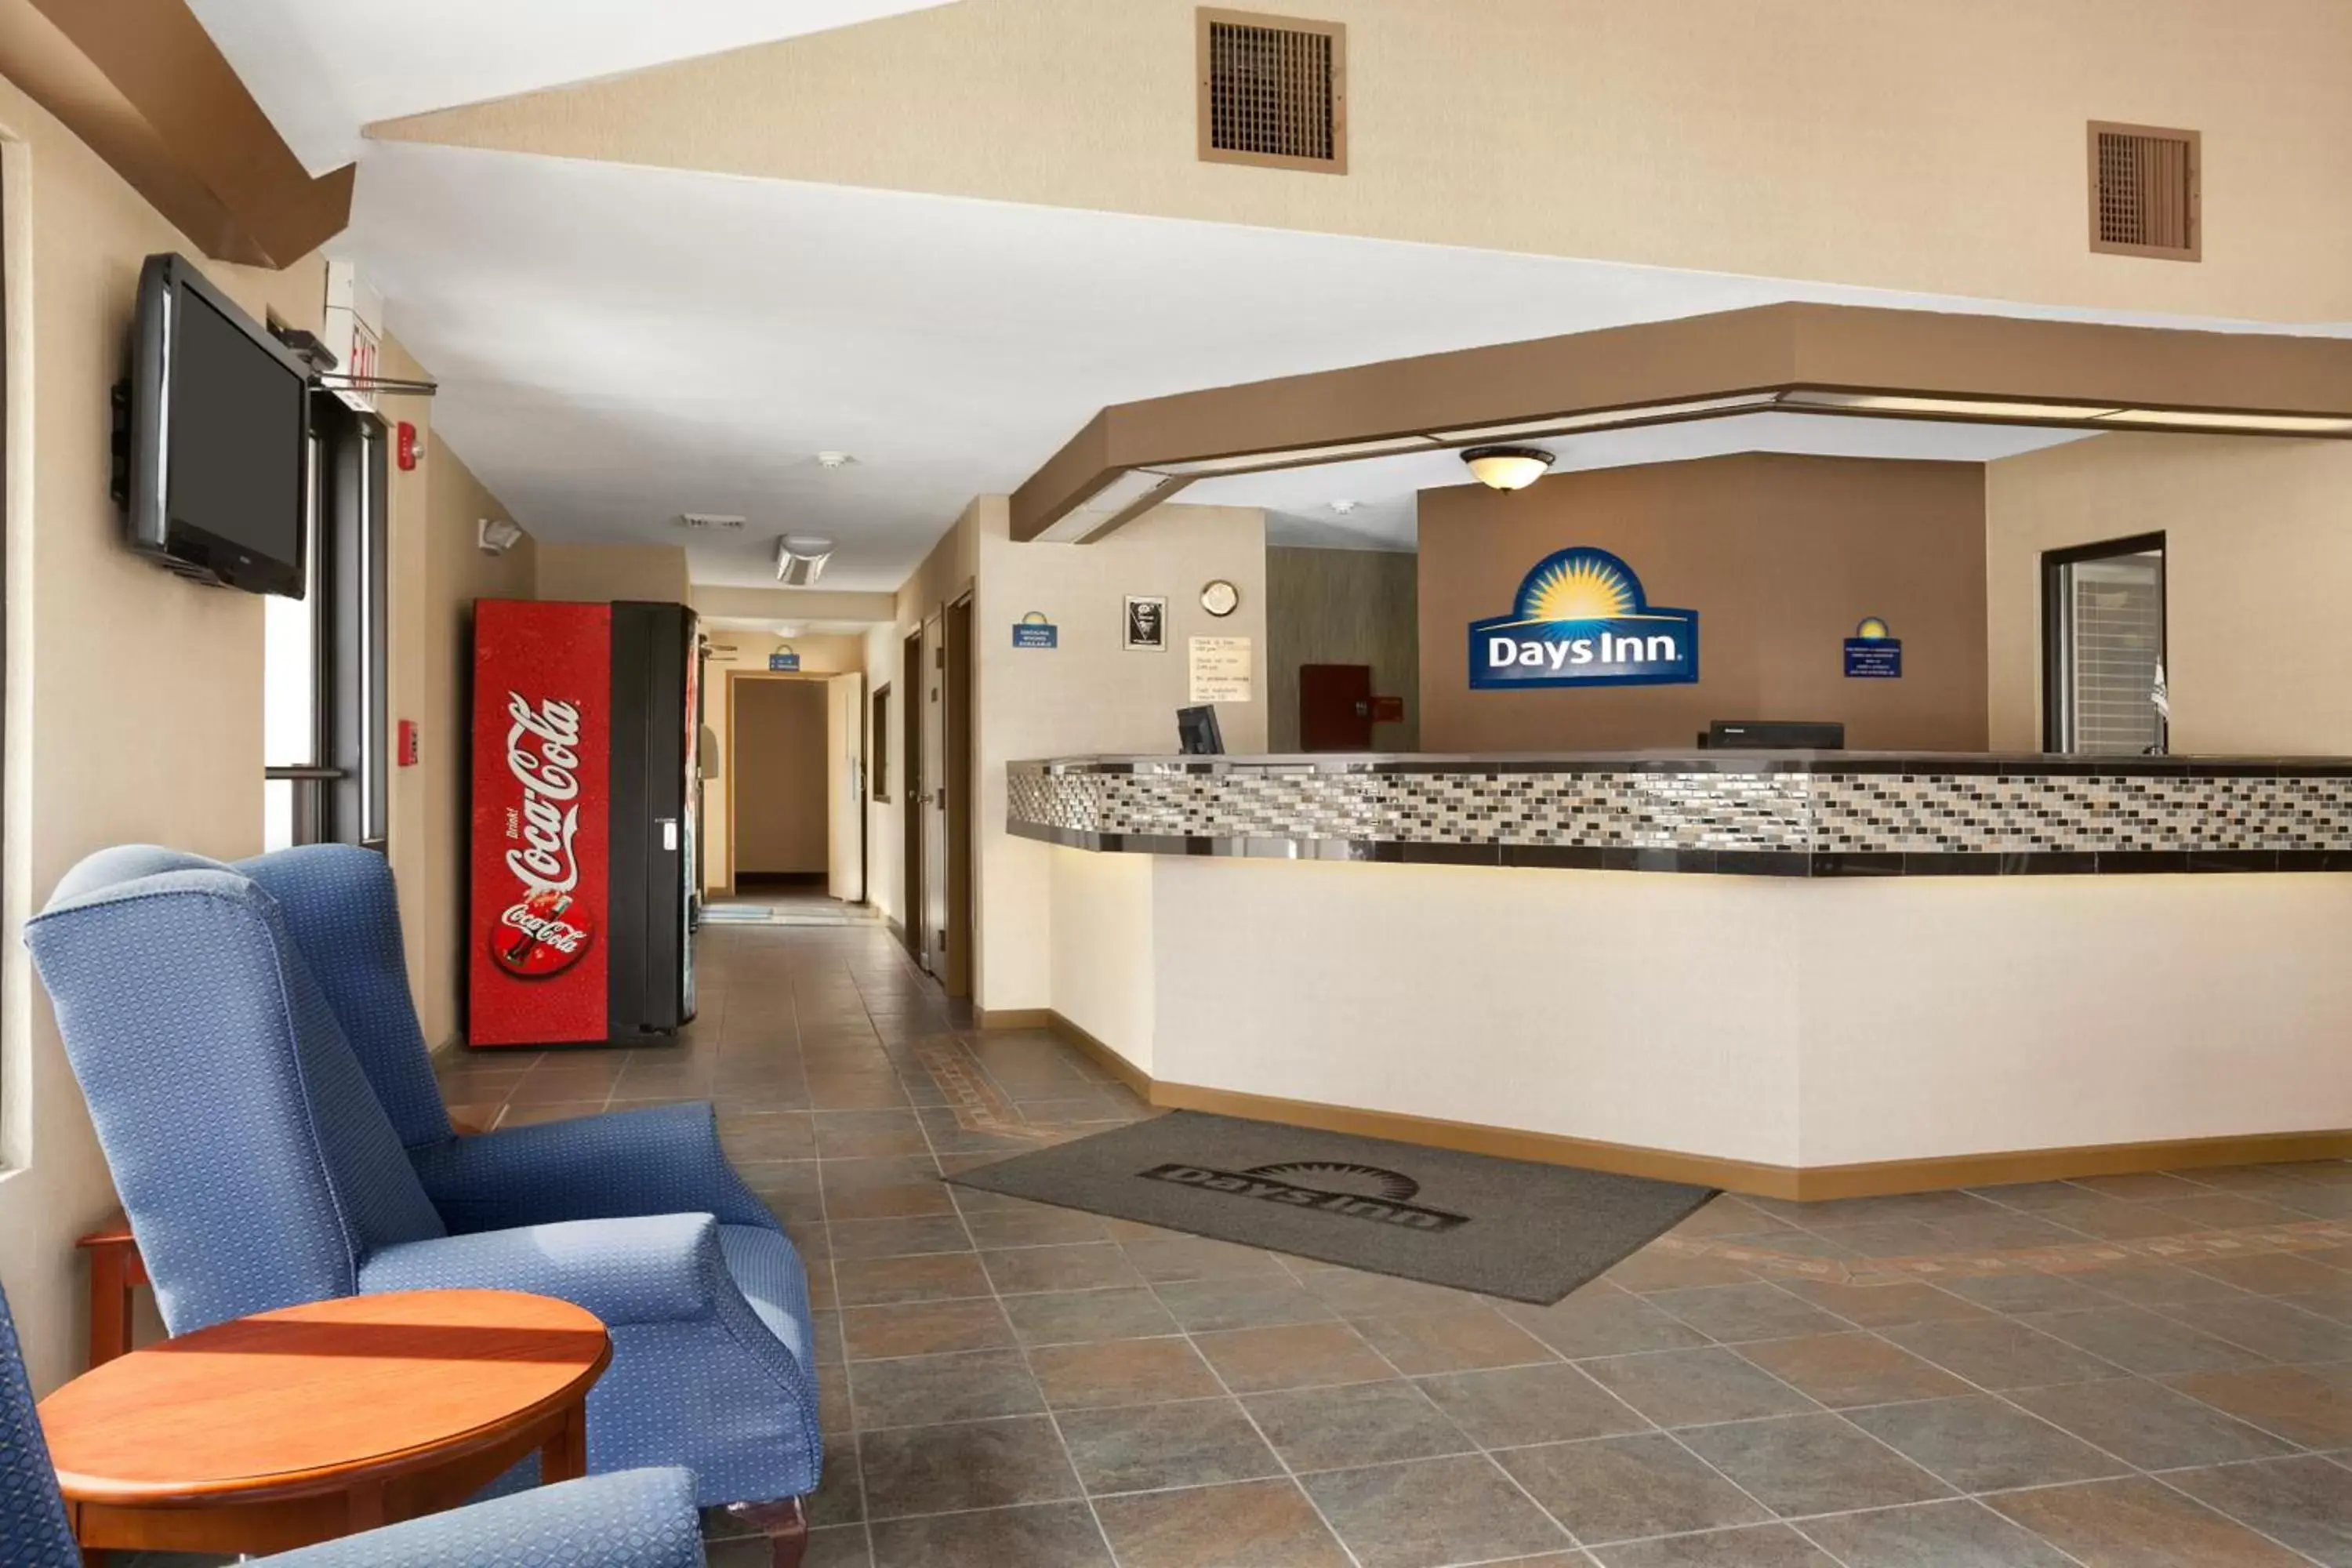 Lobby or reception, Lobby/Reception in Days Inn by Wyndham Middletown